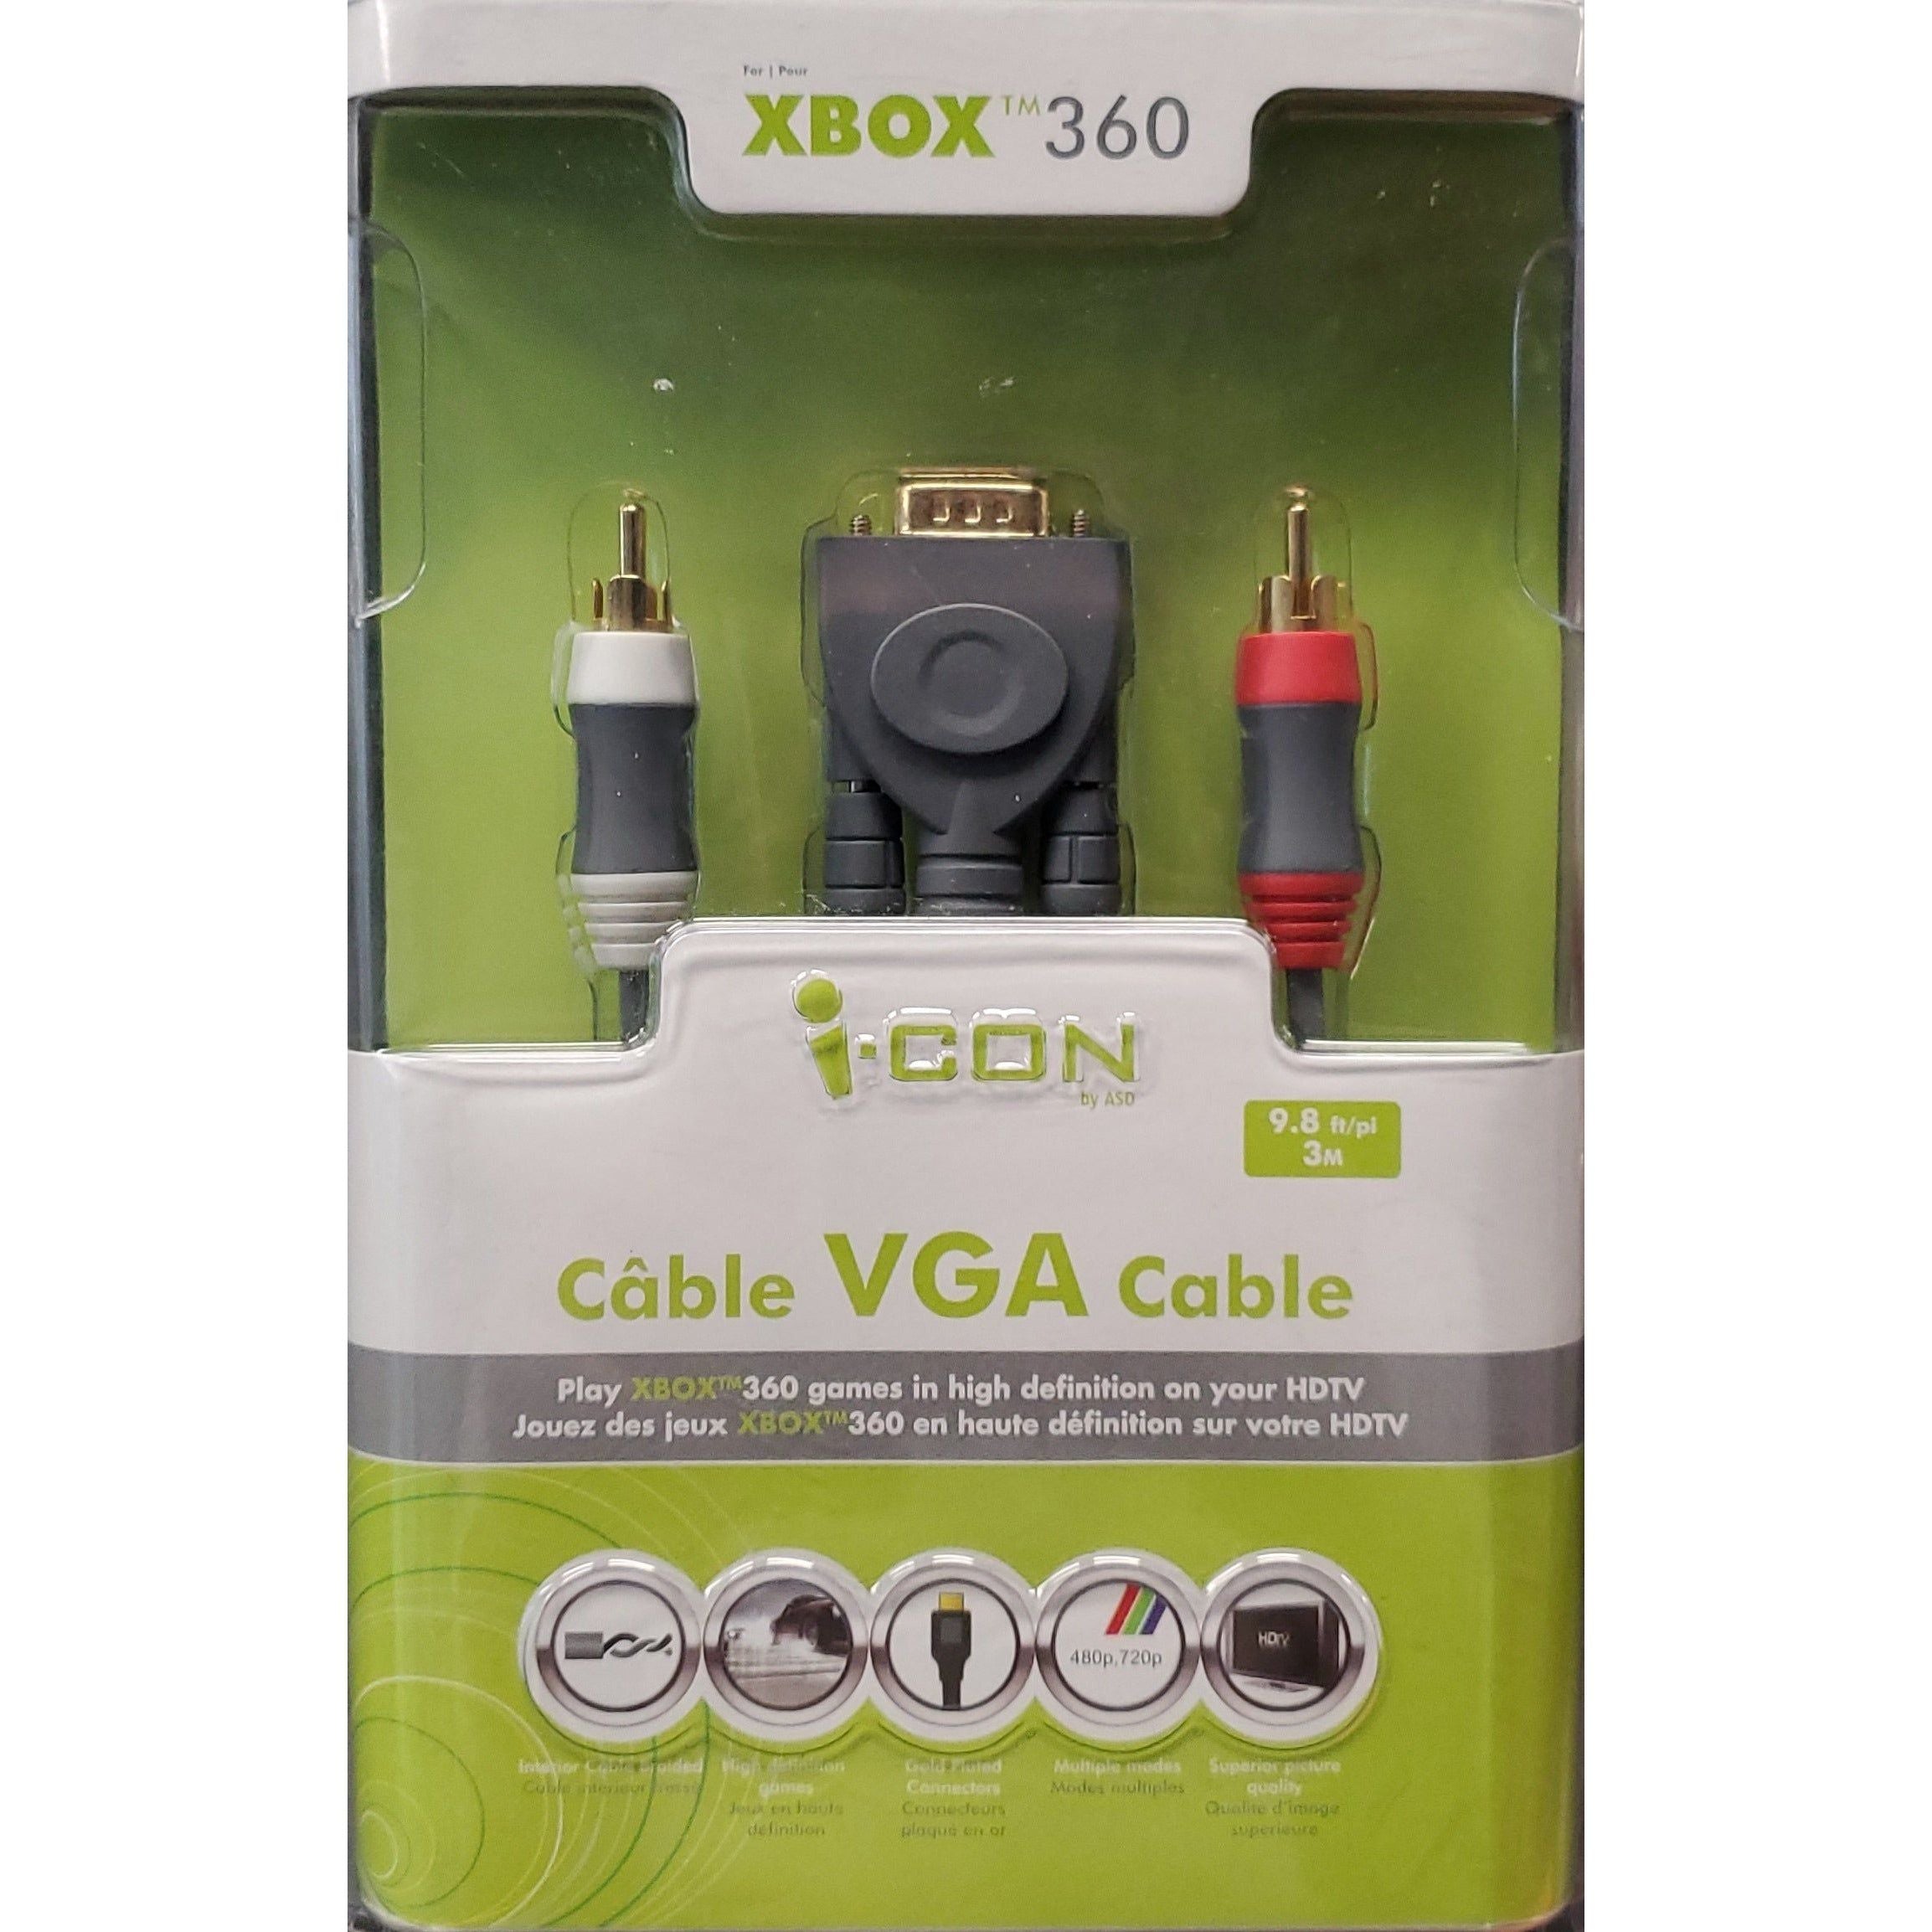 Xbox 360 VGA Cable by I-Con